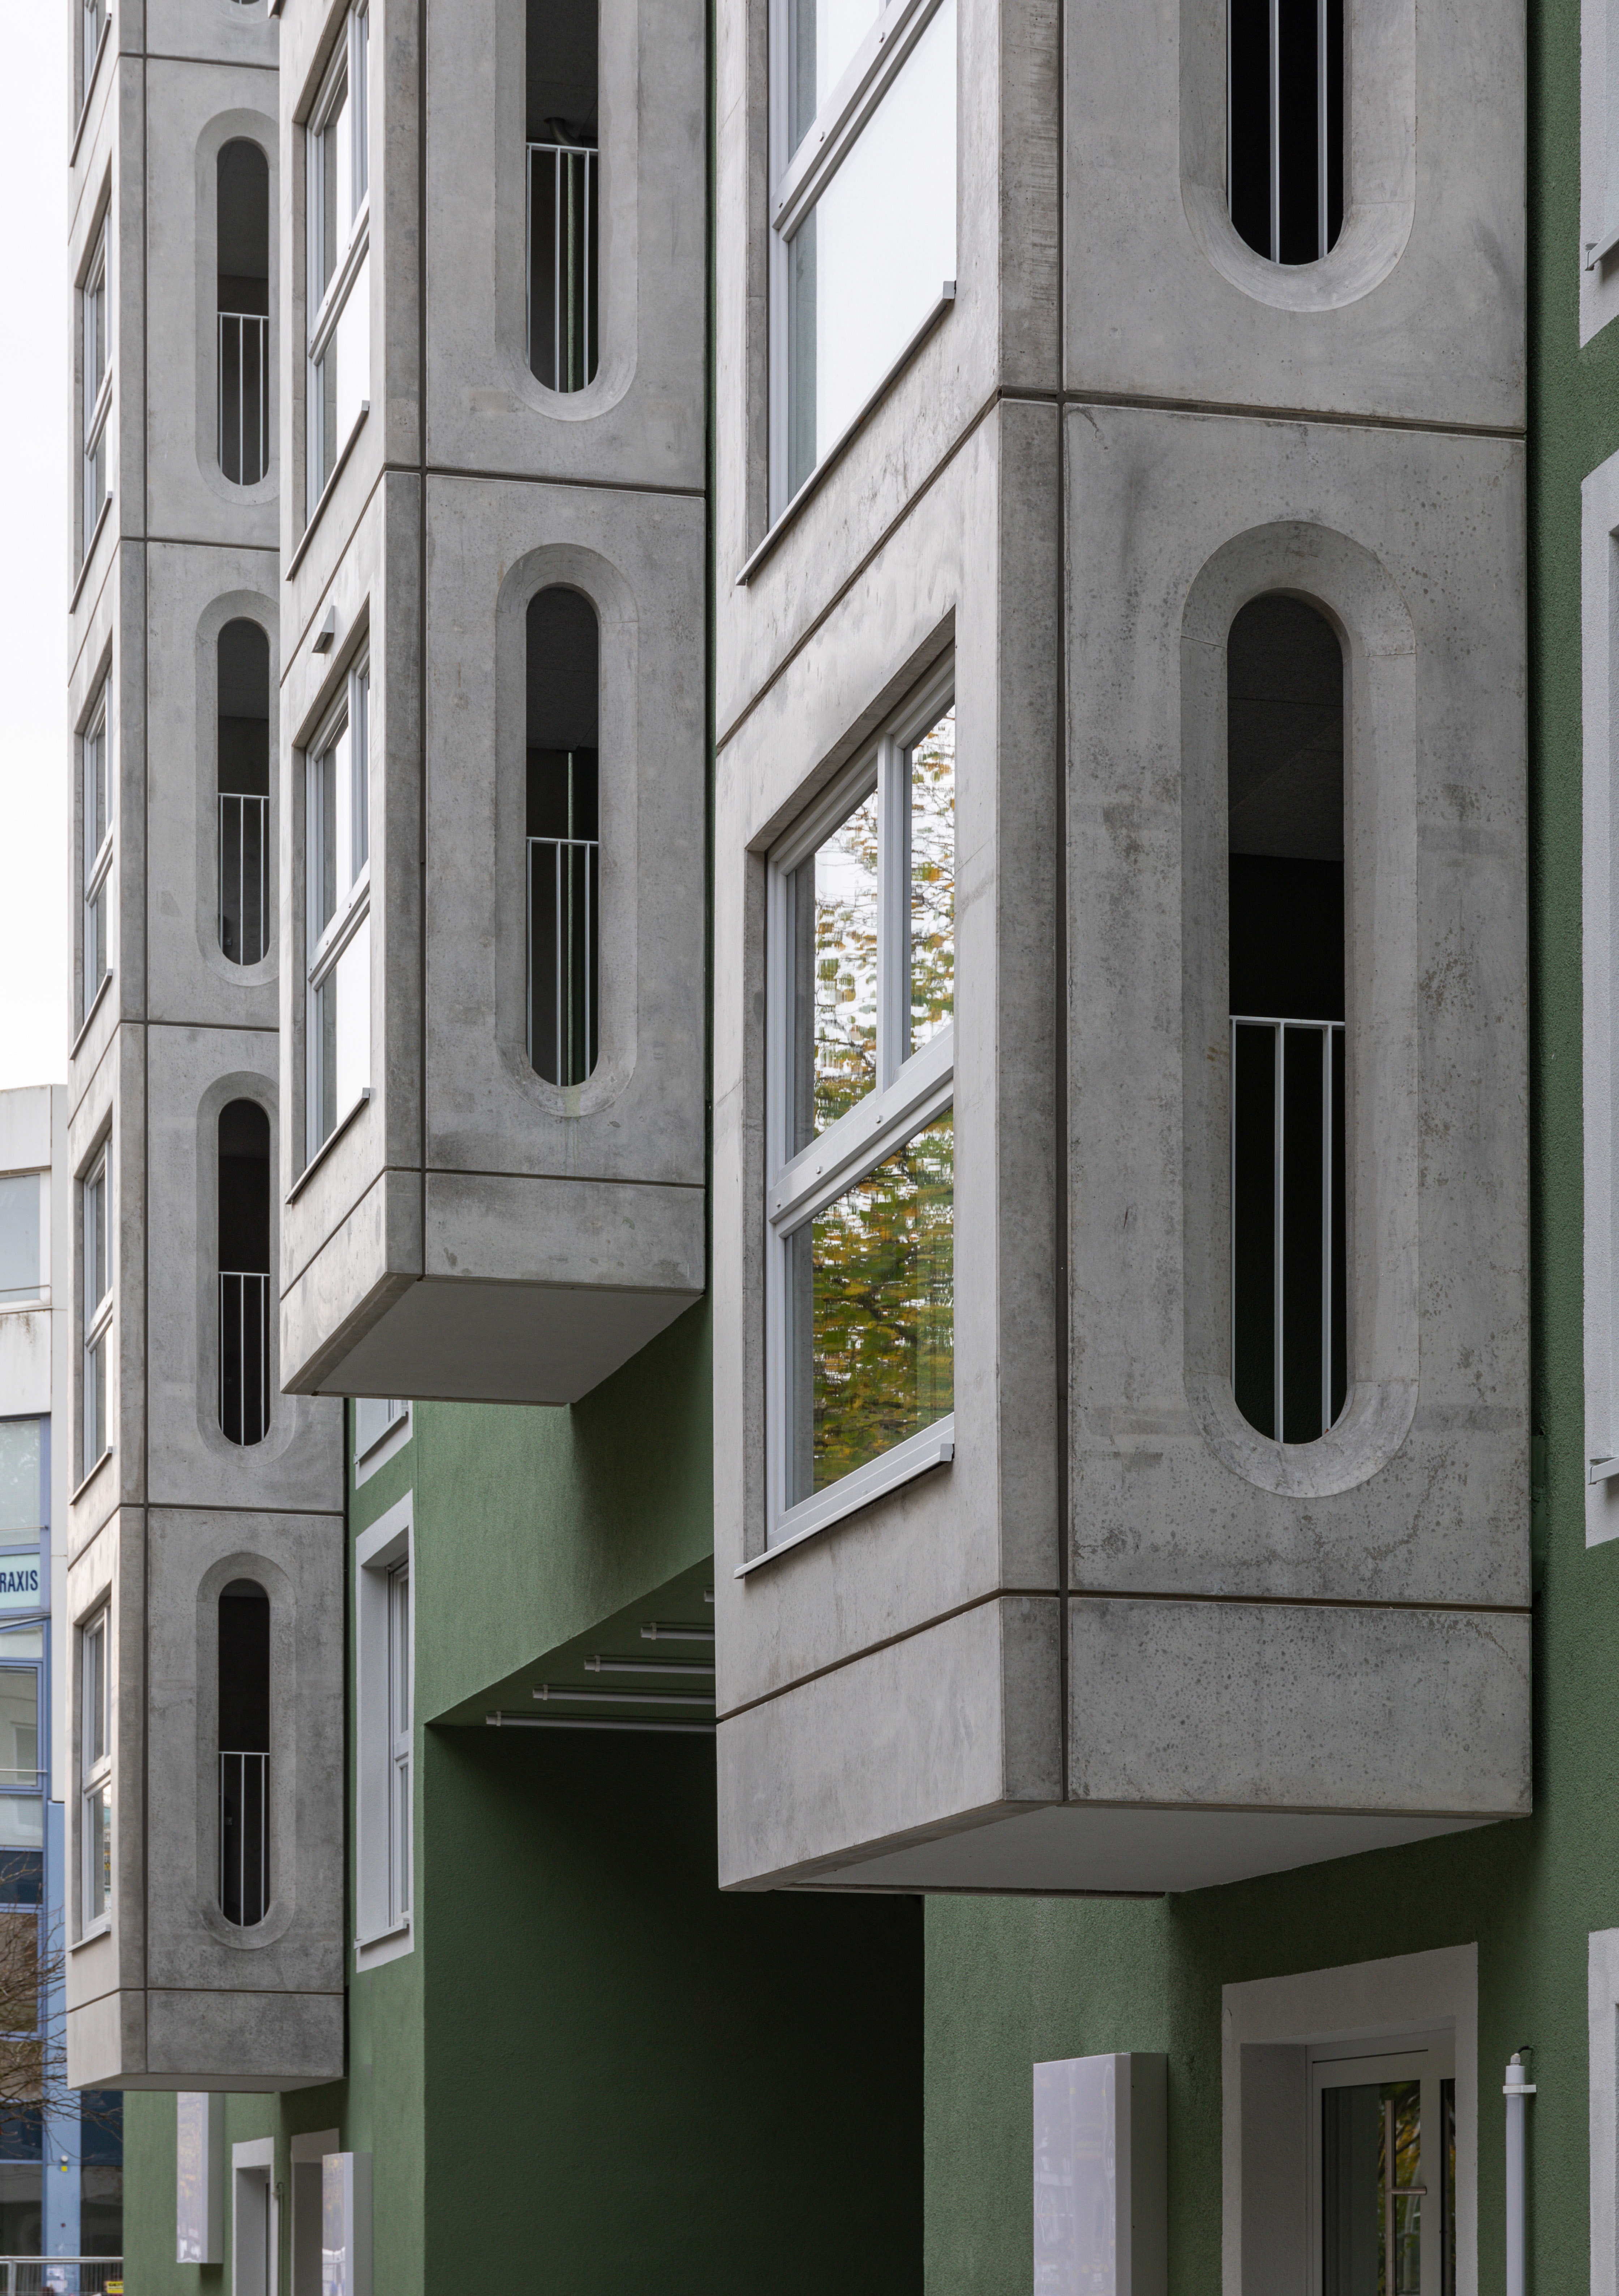 Goetz Castorph Lehmann Tabillion Architektur Städtebau München grün Balkone Raute Karo auskragend Dachterrase Mehrfamilienhaus Neubau Wohnen Visualisierung